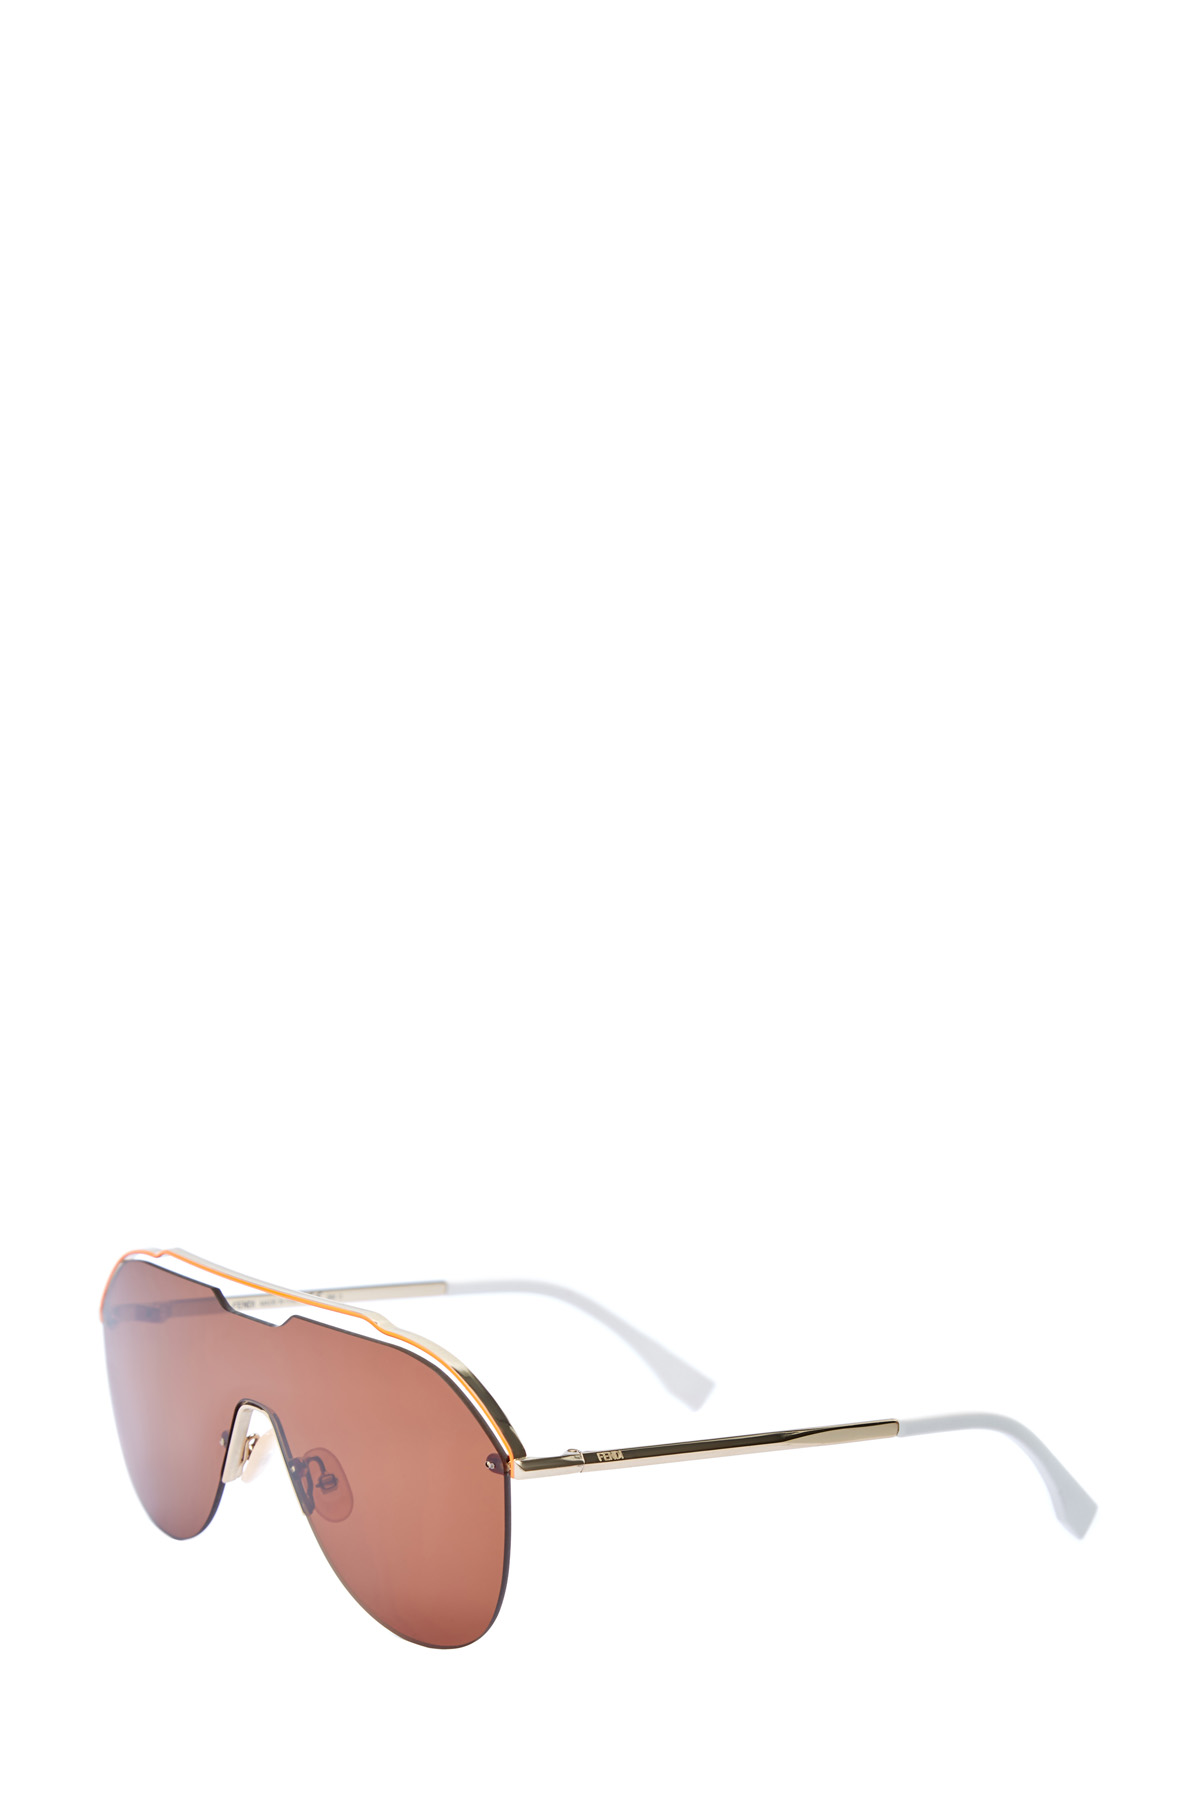 Очки-маска в графичной металлической оправе авиатор FENDI (sunglasses), цвет коричневый, размер XS;S - фото 3